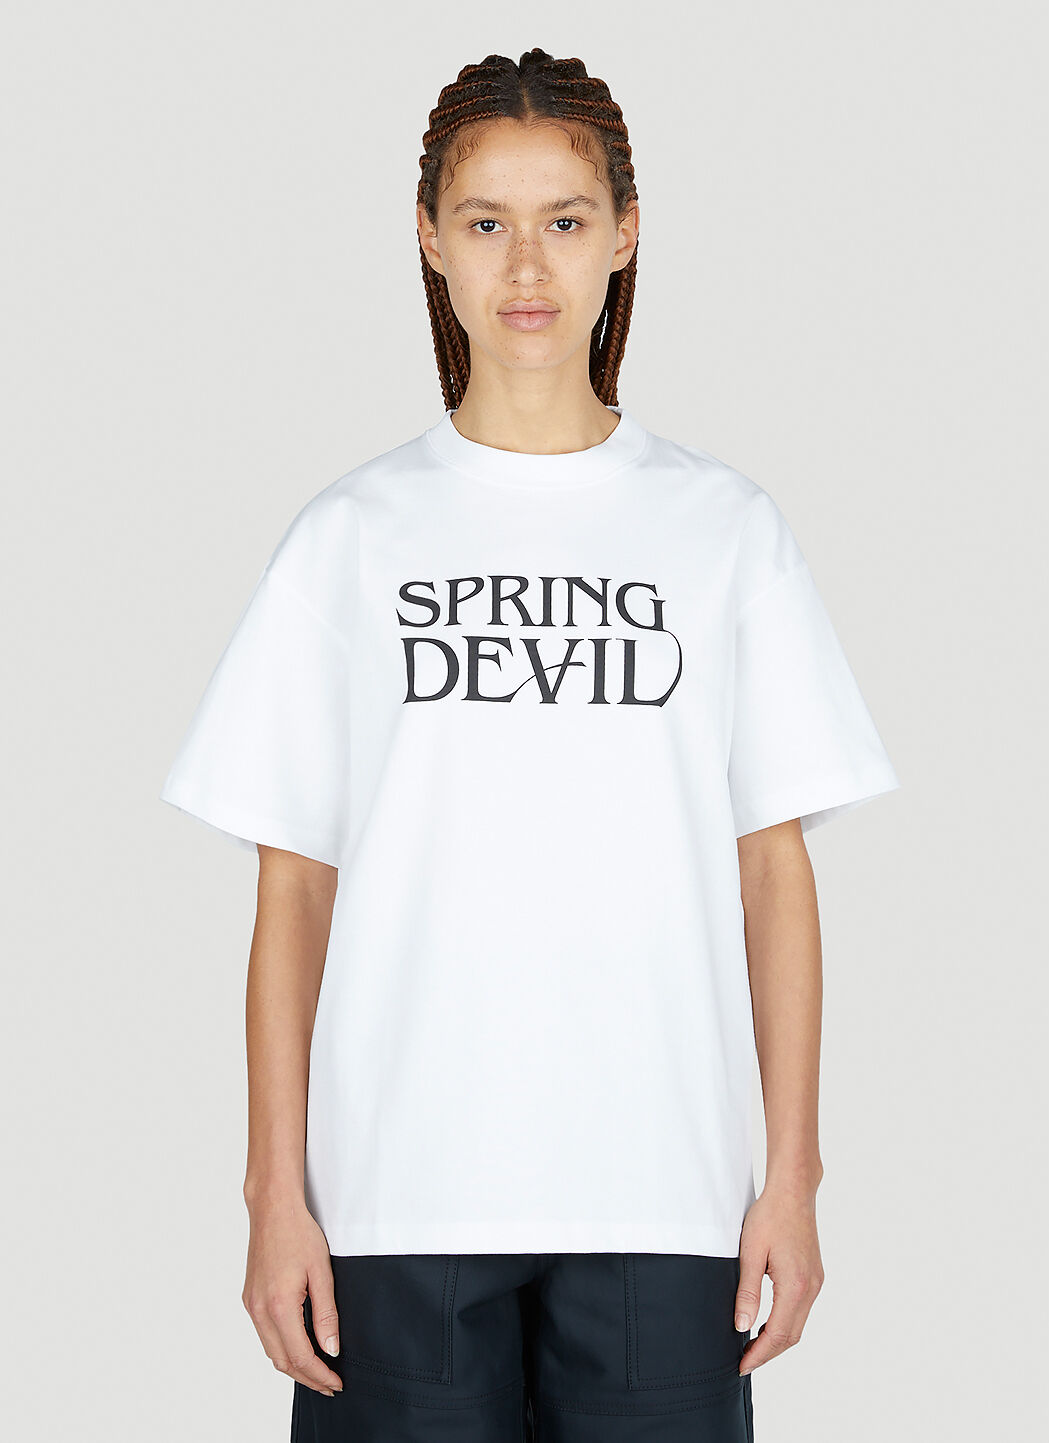 Soulland Spring Devil T-Shirt Black sld0352003